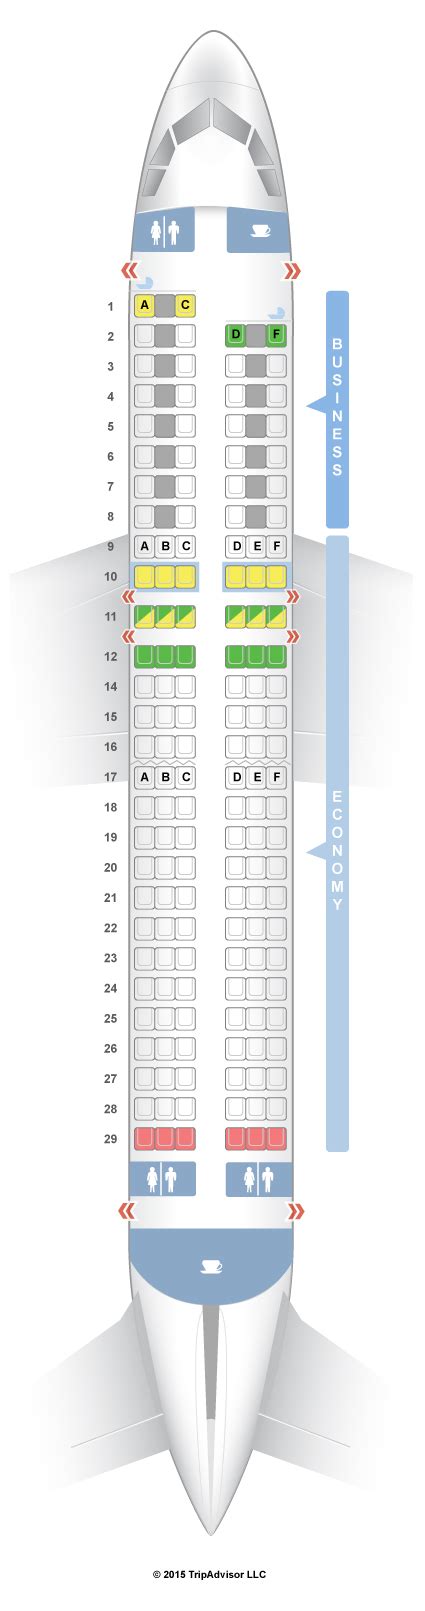 Seatguru Seat Map Air France Airbus A320 320 Europe V1